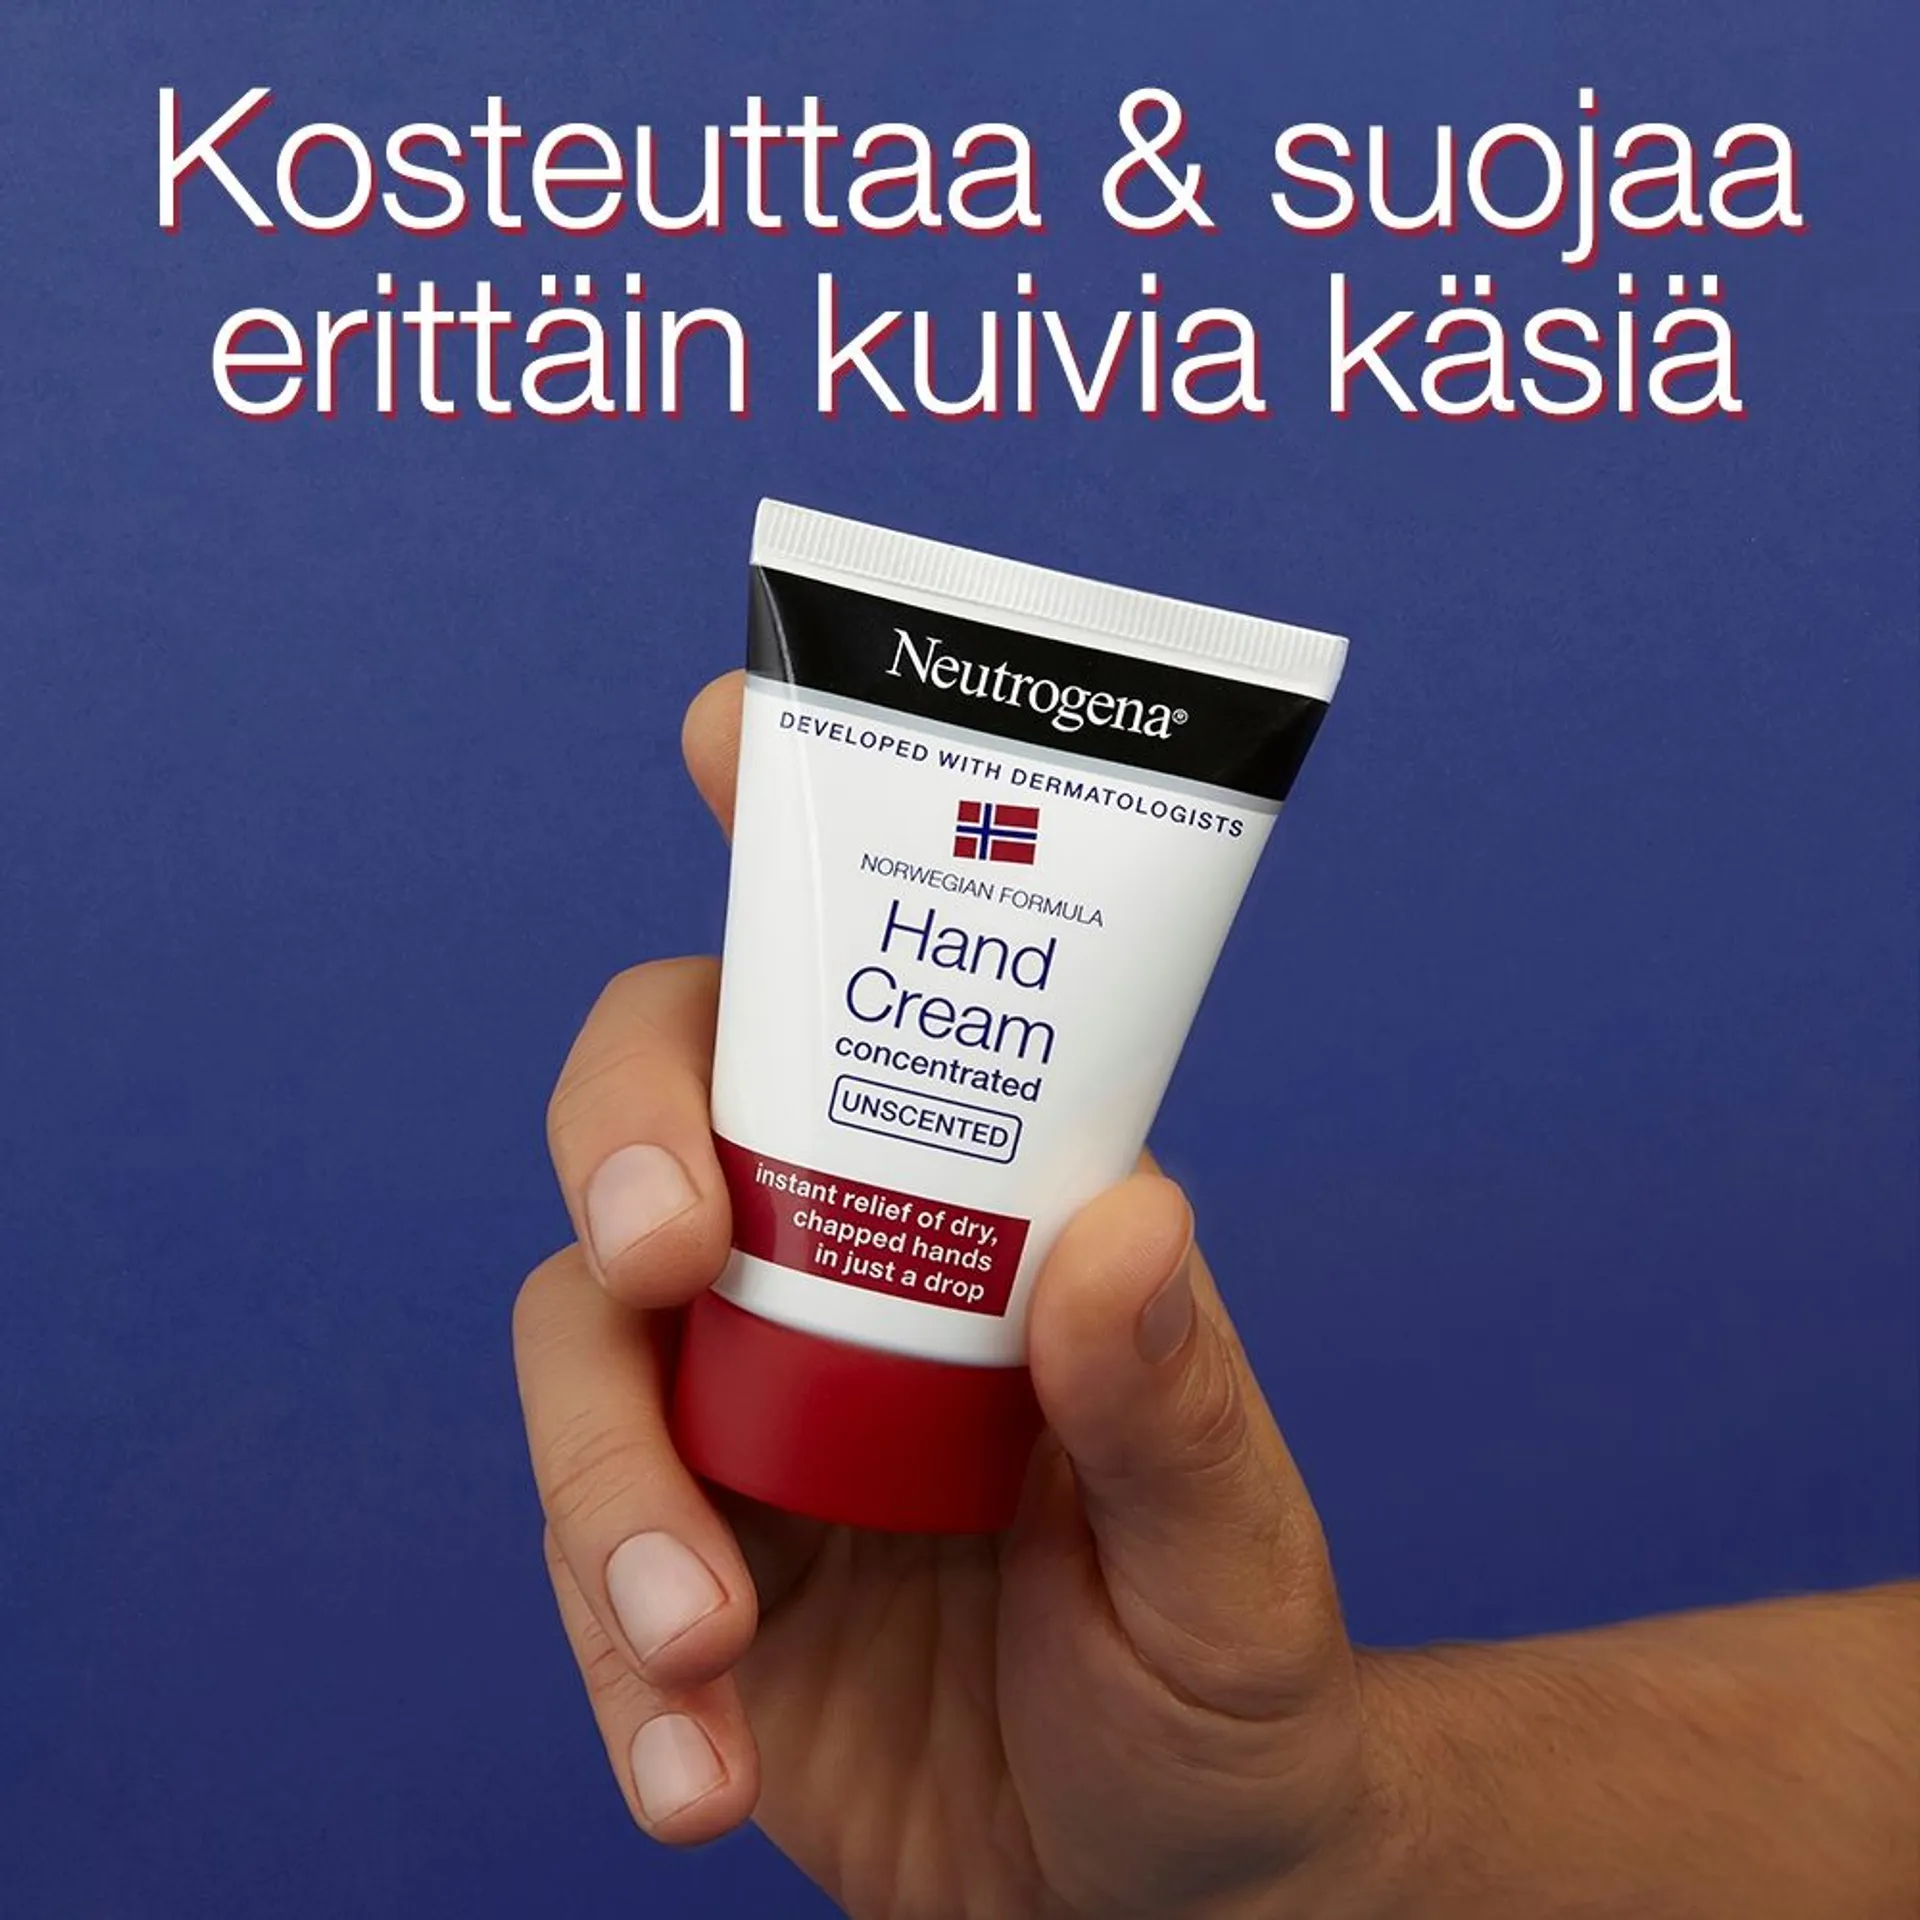 Neutrogena® Norwegian Formula  50 ml Hand Cream unscented hajustamaton käsivoide 50ml - 2